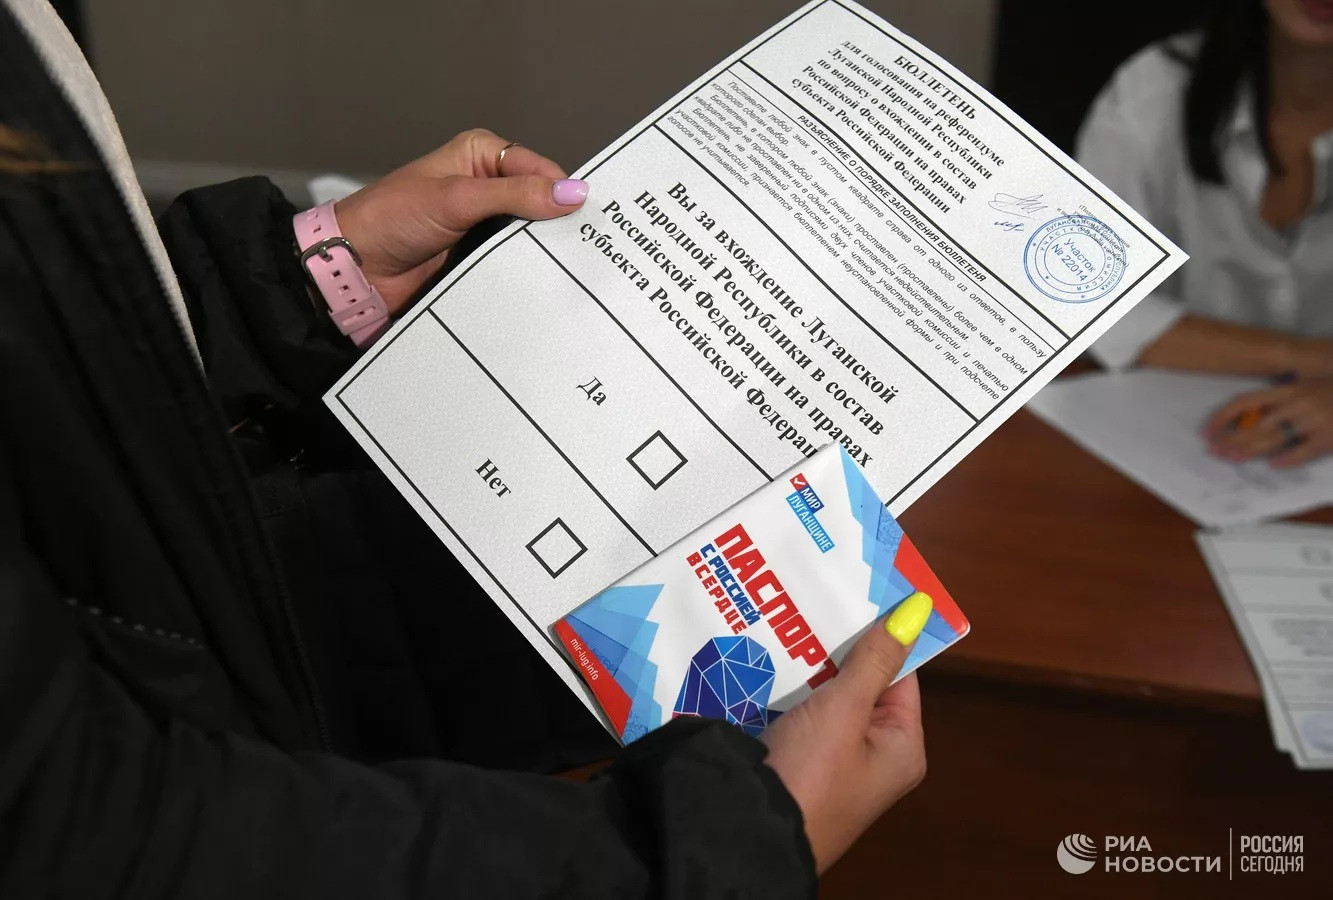 Tỷ lệ cử tri đi bỏ phiếu tại trưng cầu dân ý sáp nhập Nga ở DPR trong hai ngày là 55,05%